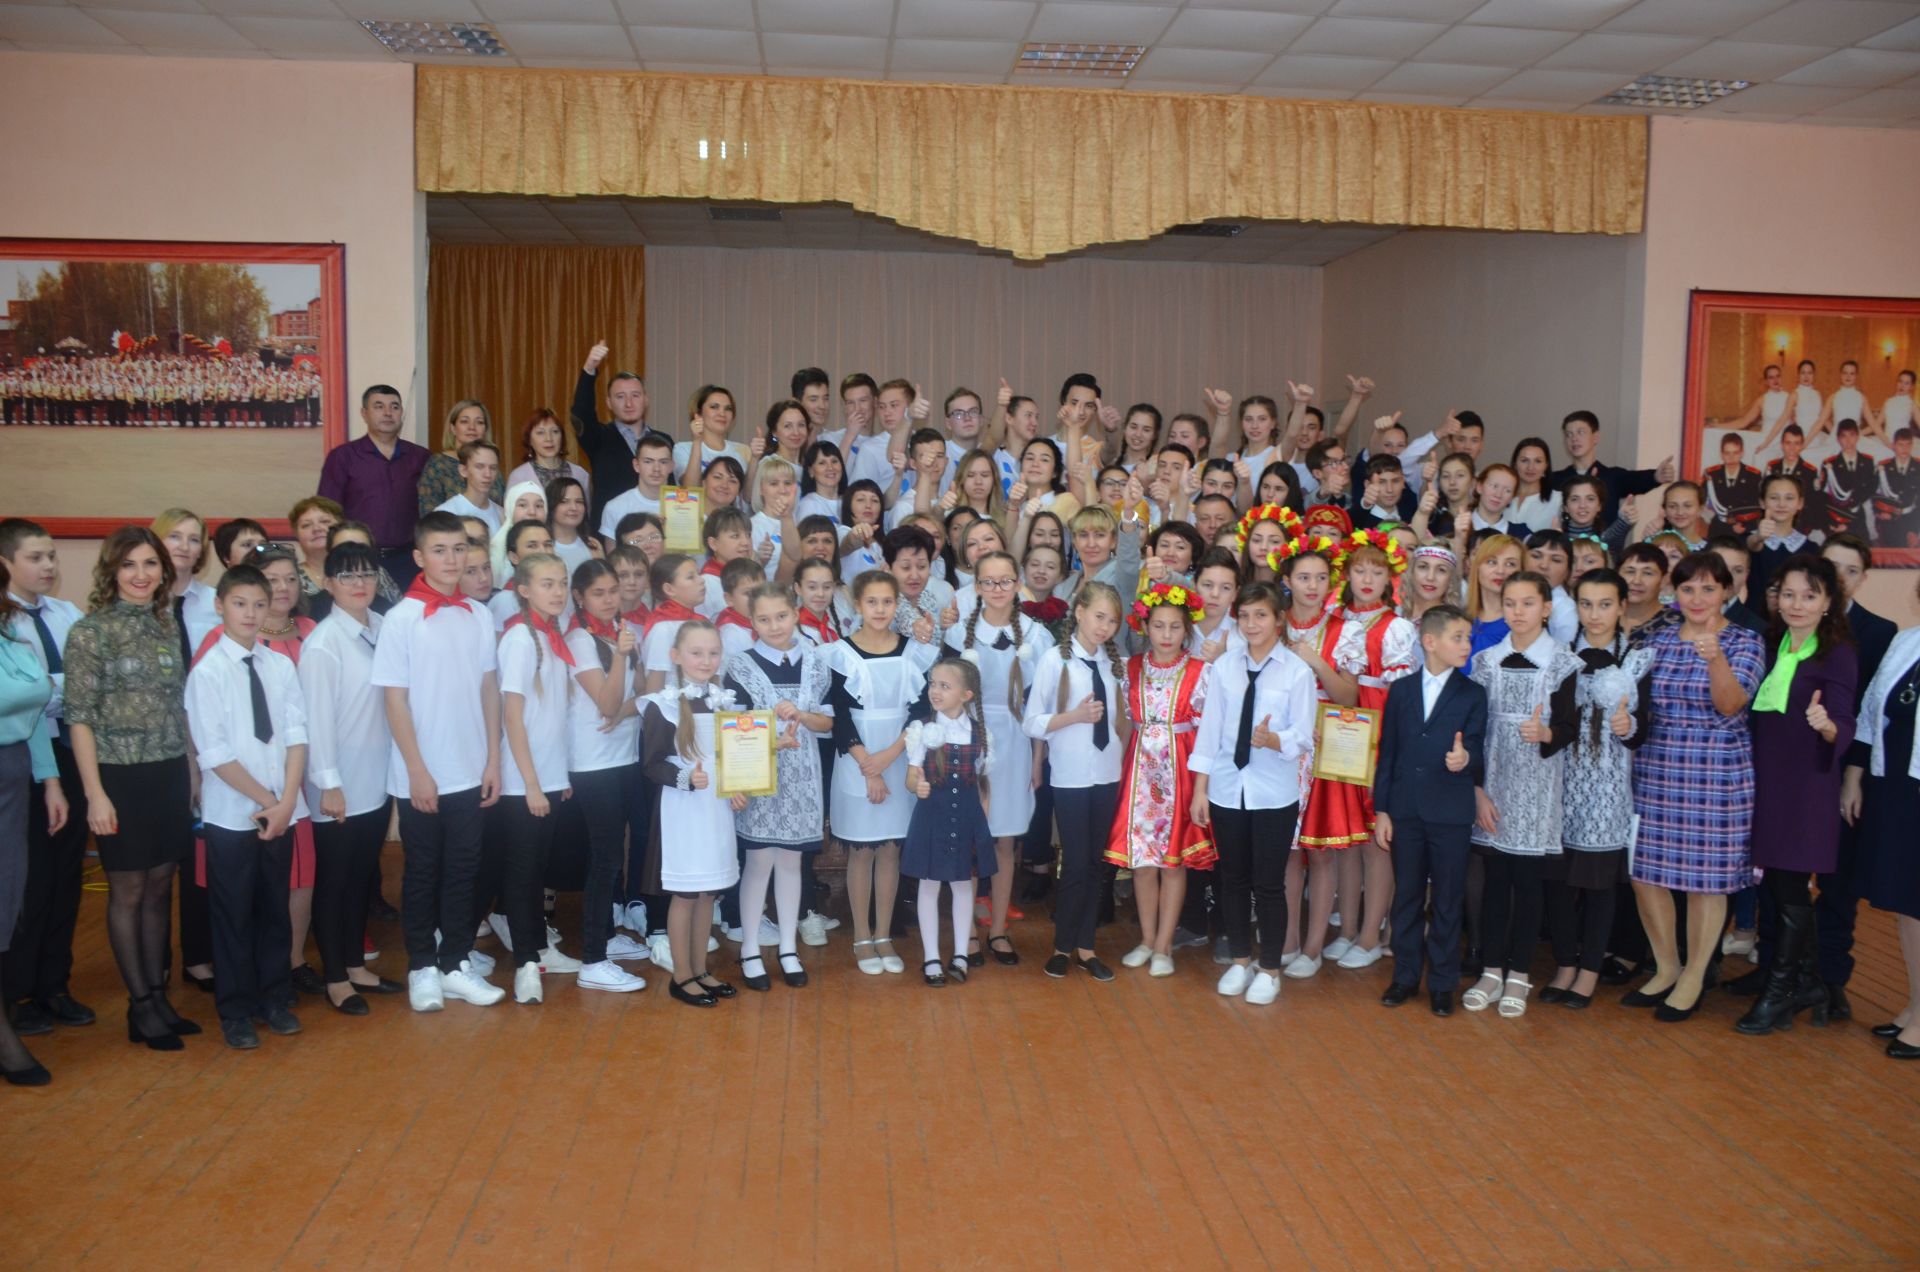 Ученики Девятернинской школы отмечены самым сплоченным коллективом на конкурсе родительских комитетов